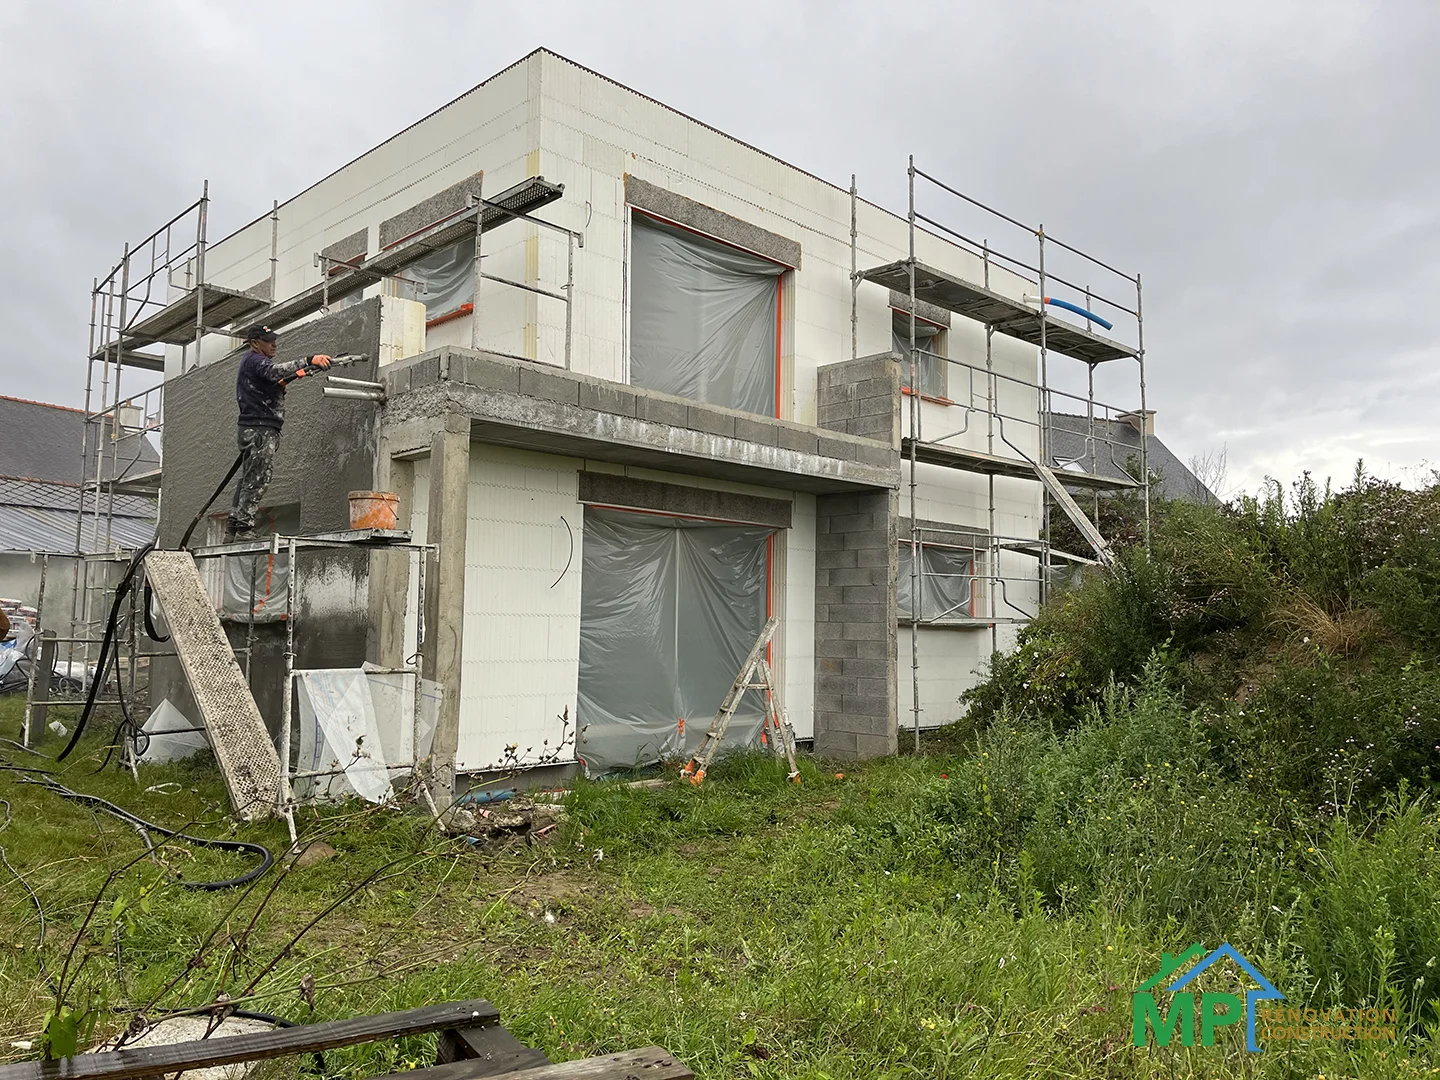 Maison Passive en Bretagne MP Construction Rénovation